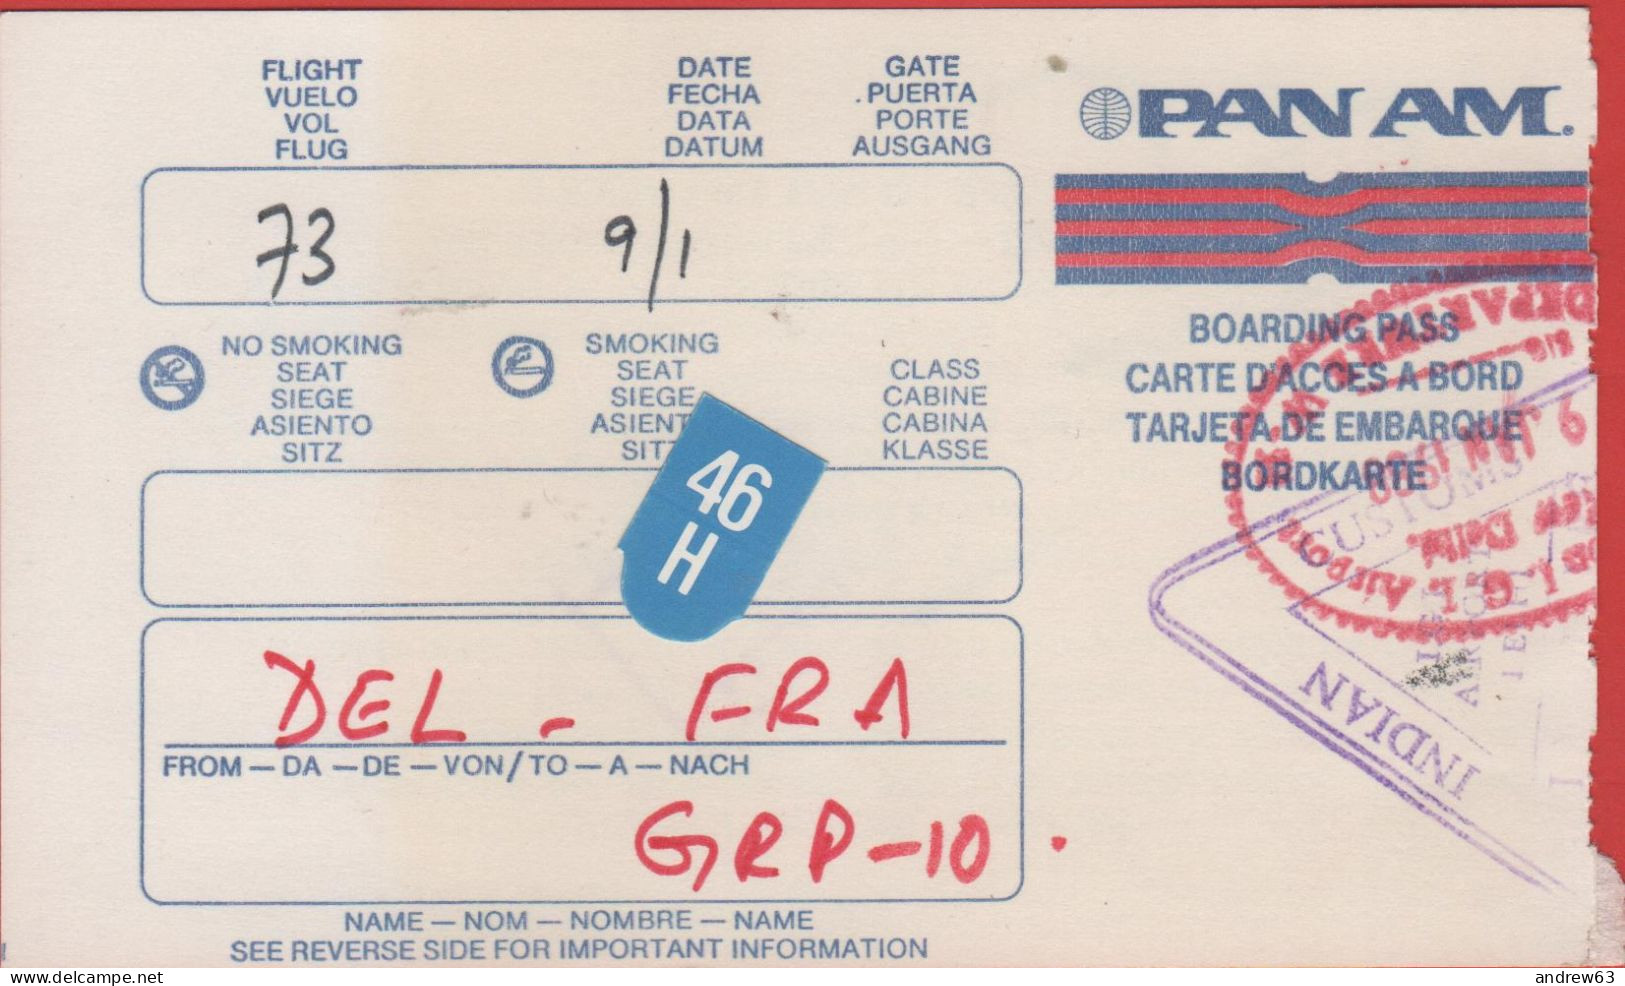 USA - PAN AM - DEL-FRA - Carta D'Imbarco - Boarding Pass - Mondo